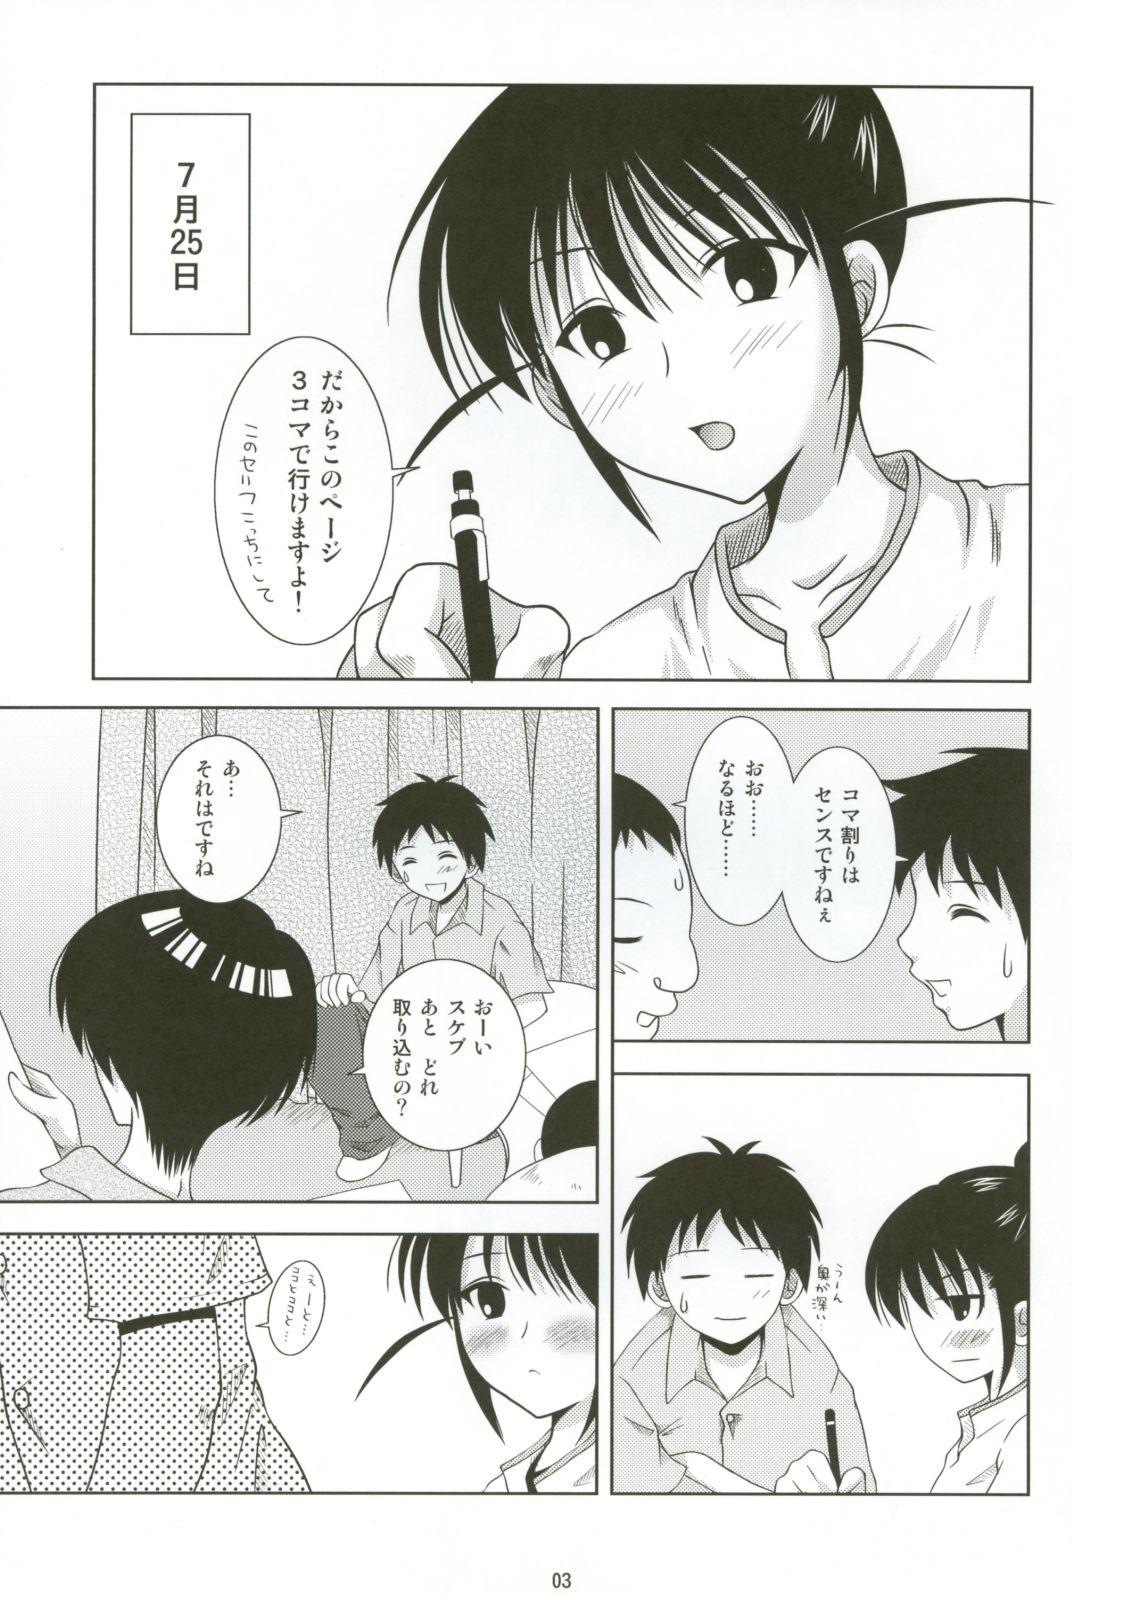 Retro ABC Gokko - Genshiken Gorgeous - Page 3